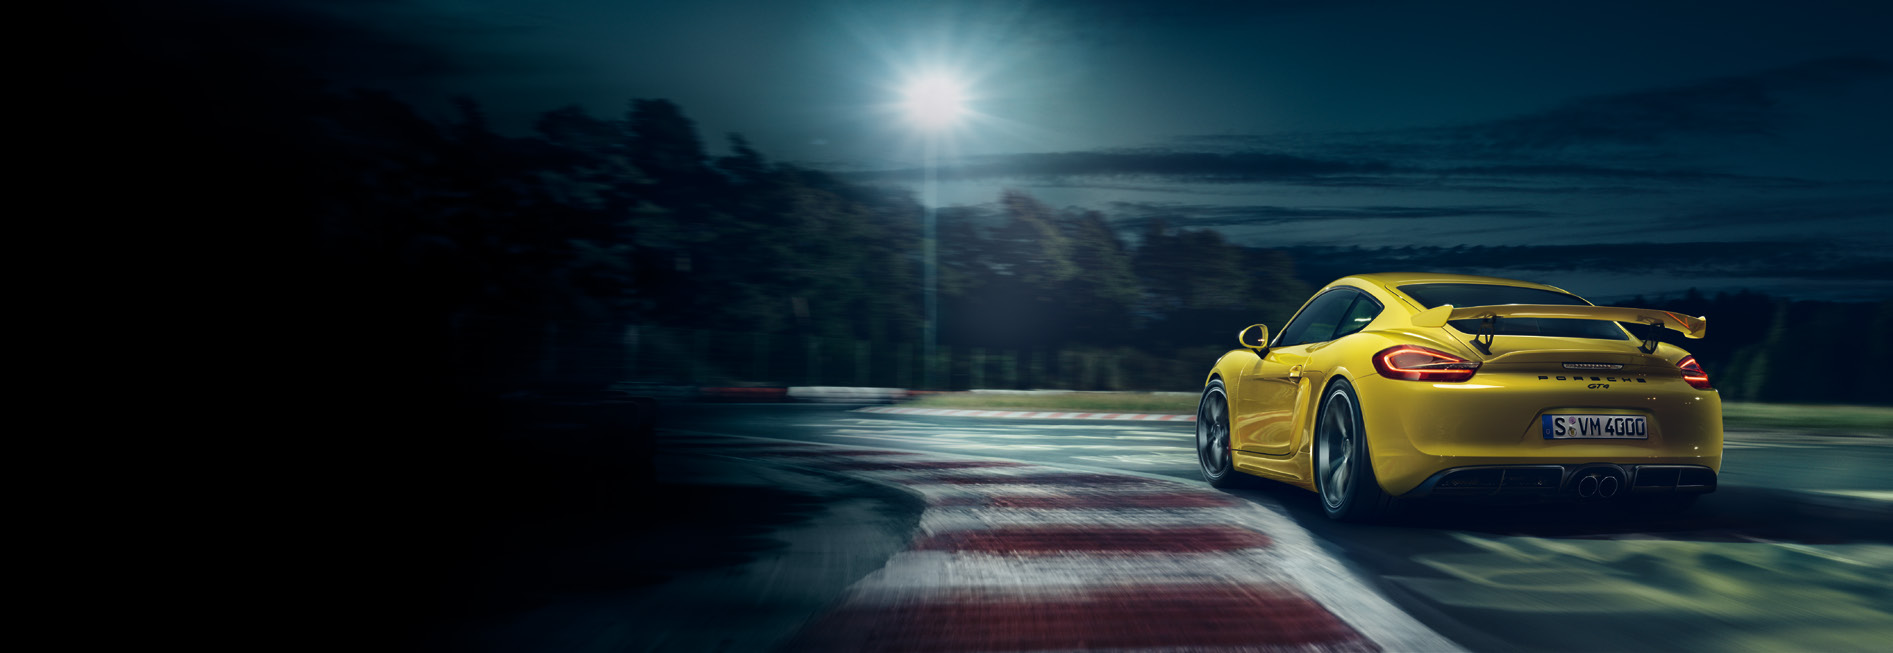 Primeiro deixá-lo-á sem respiração. E depois sem fim-de-semana. A ideia Cayman GT4. O novo Cayman GT4 é o passo há muito esperado para além de todos os limites.